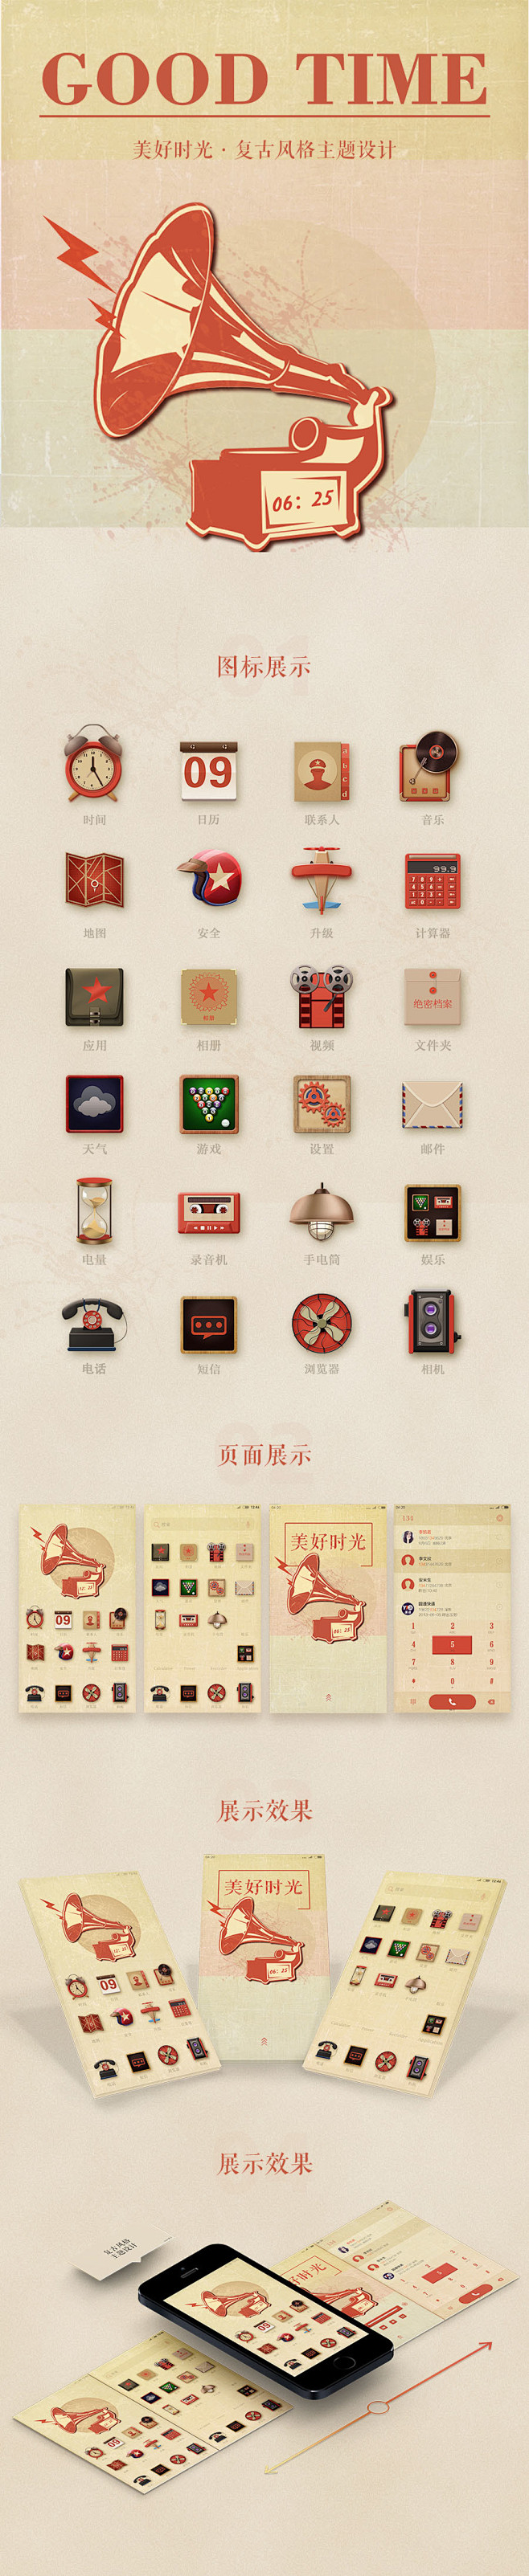 复古风格手机主题设计-UI中国用户体验设...